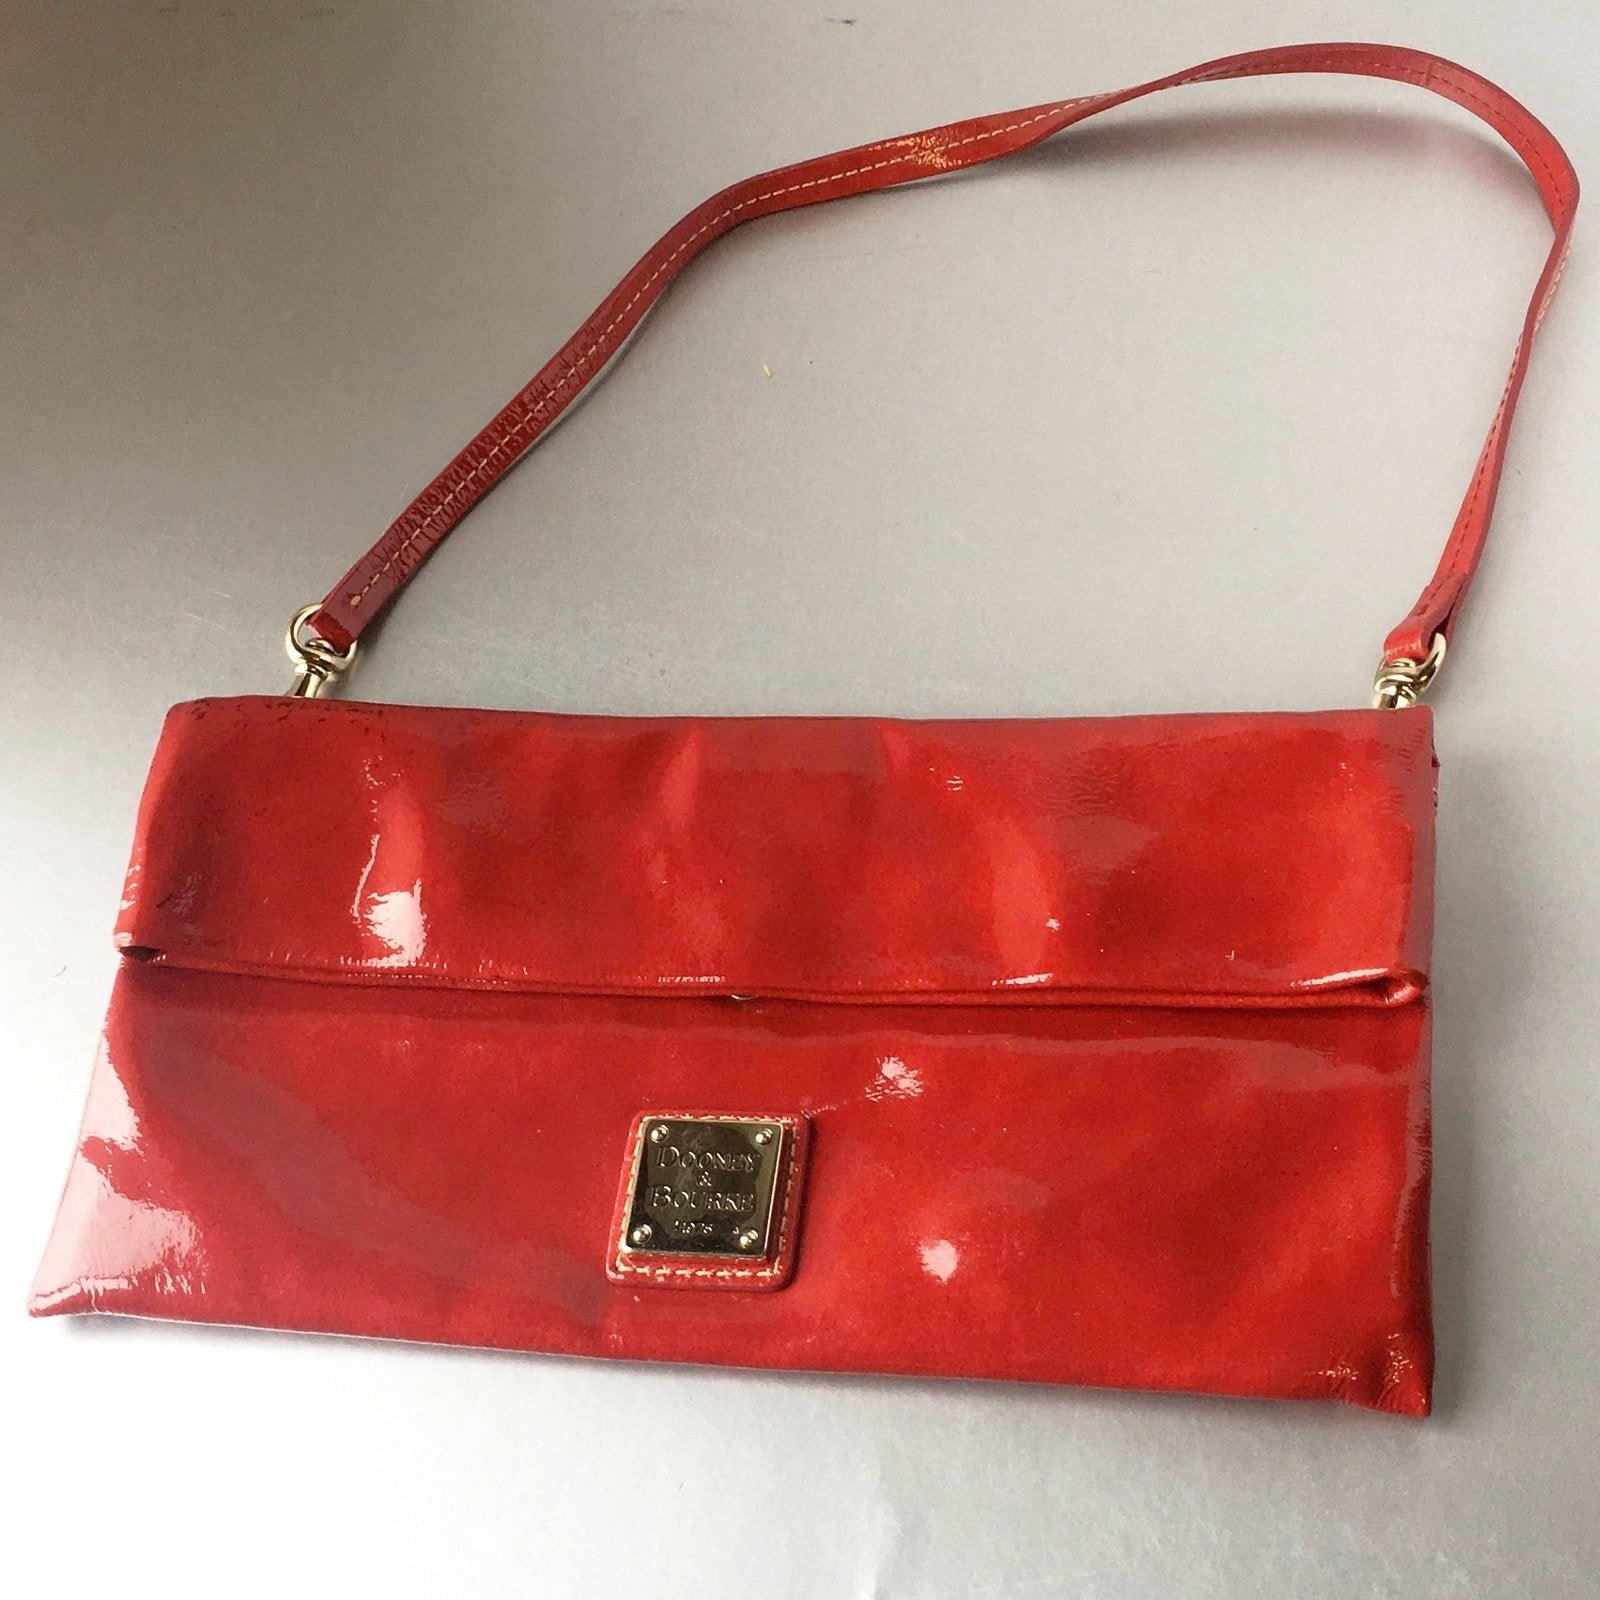 Dooney & Bourke Red Patent Leather Fold-over Clutch Shoulder Bag